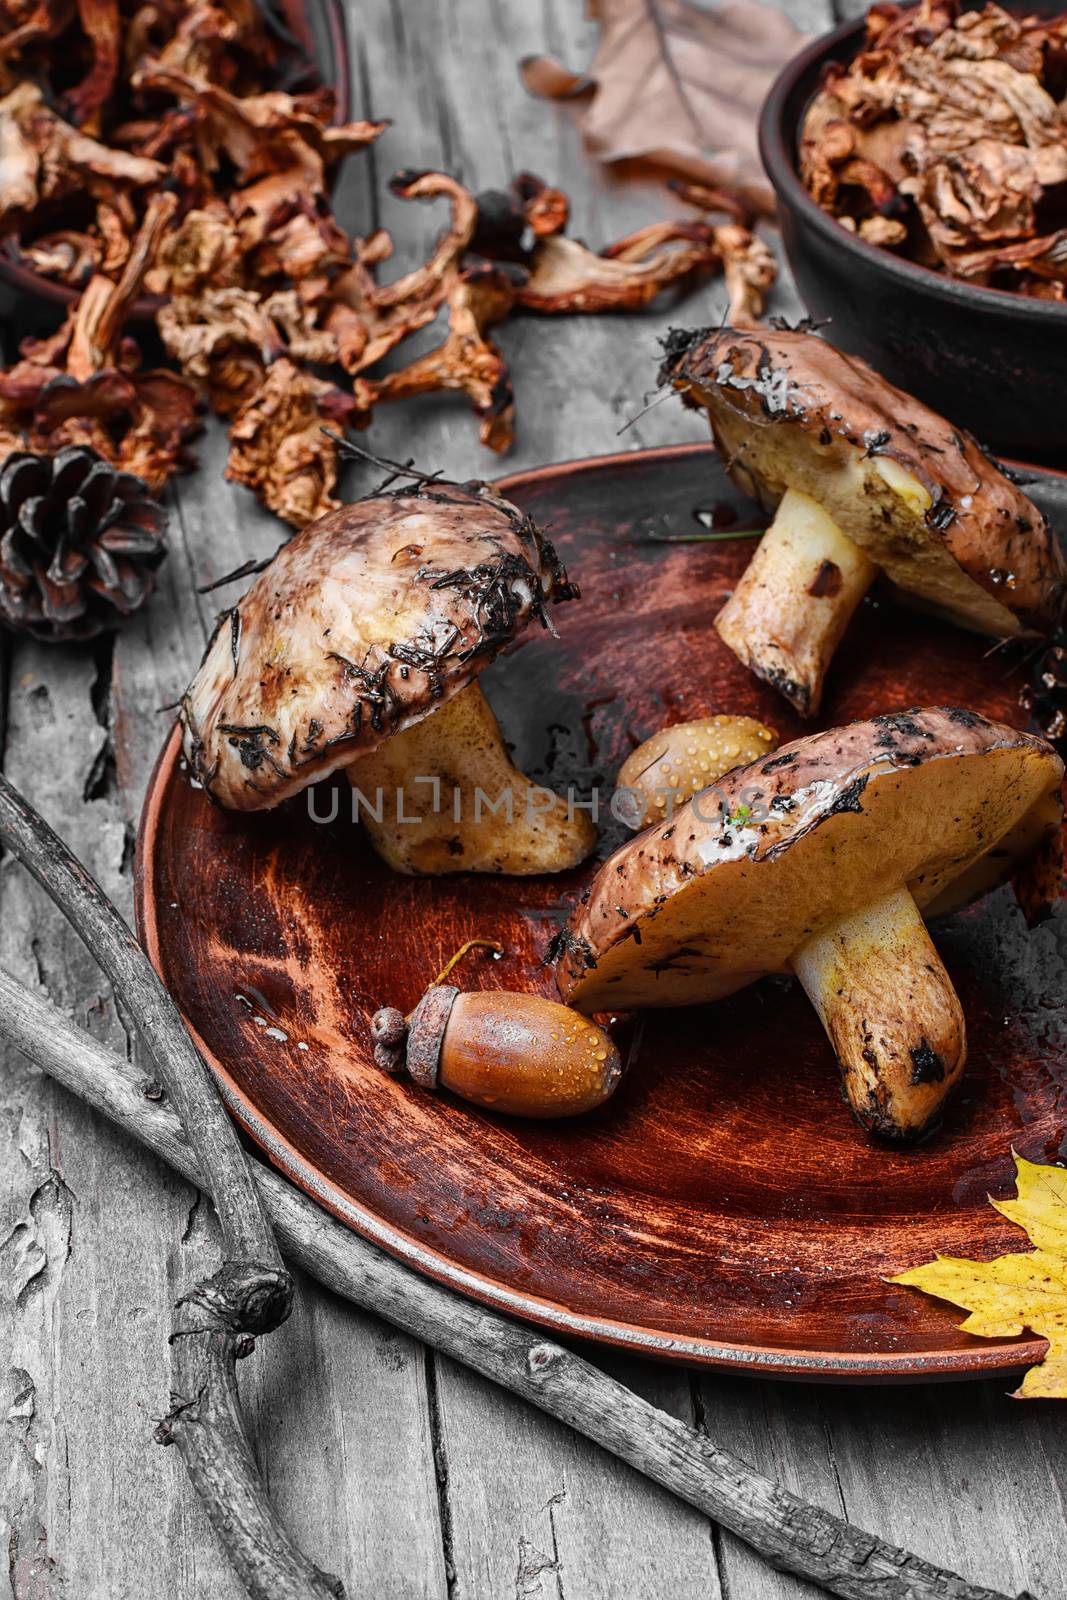 harvest of autumn mushrooms by LMykola